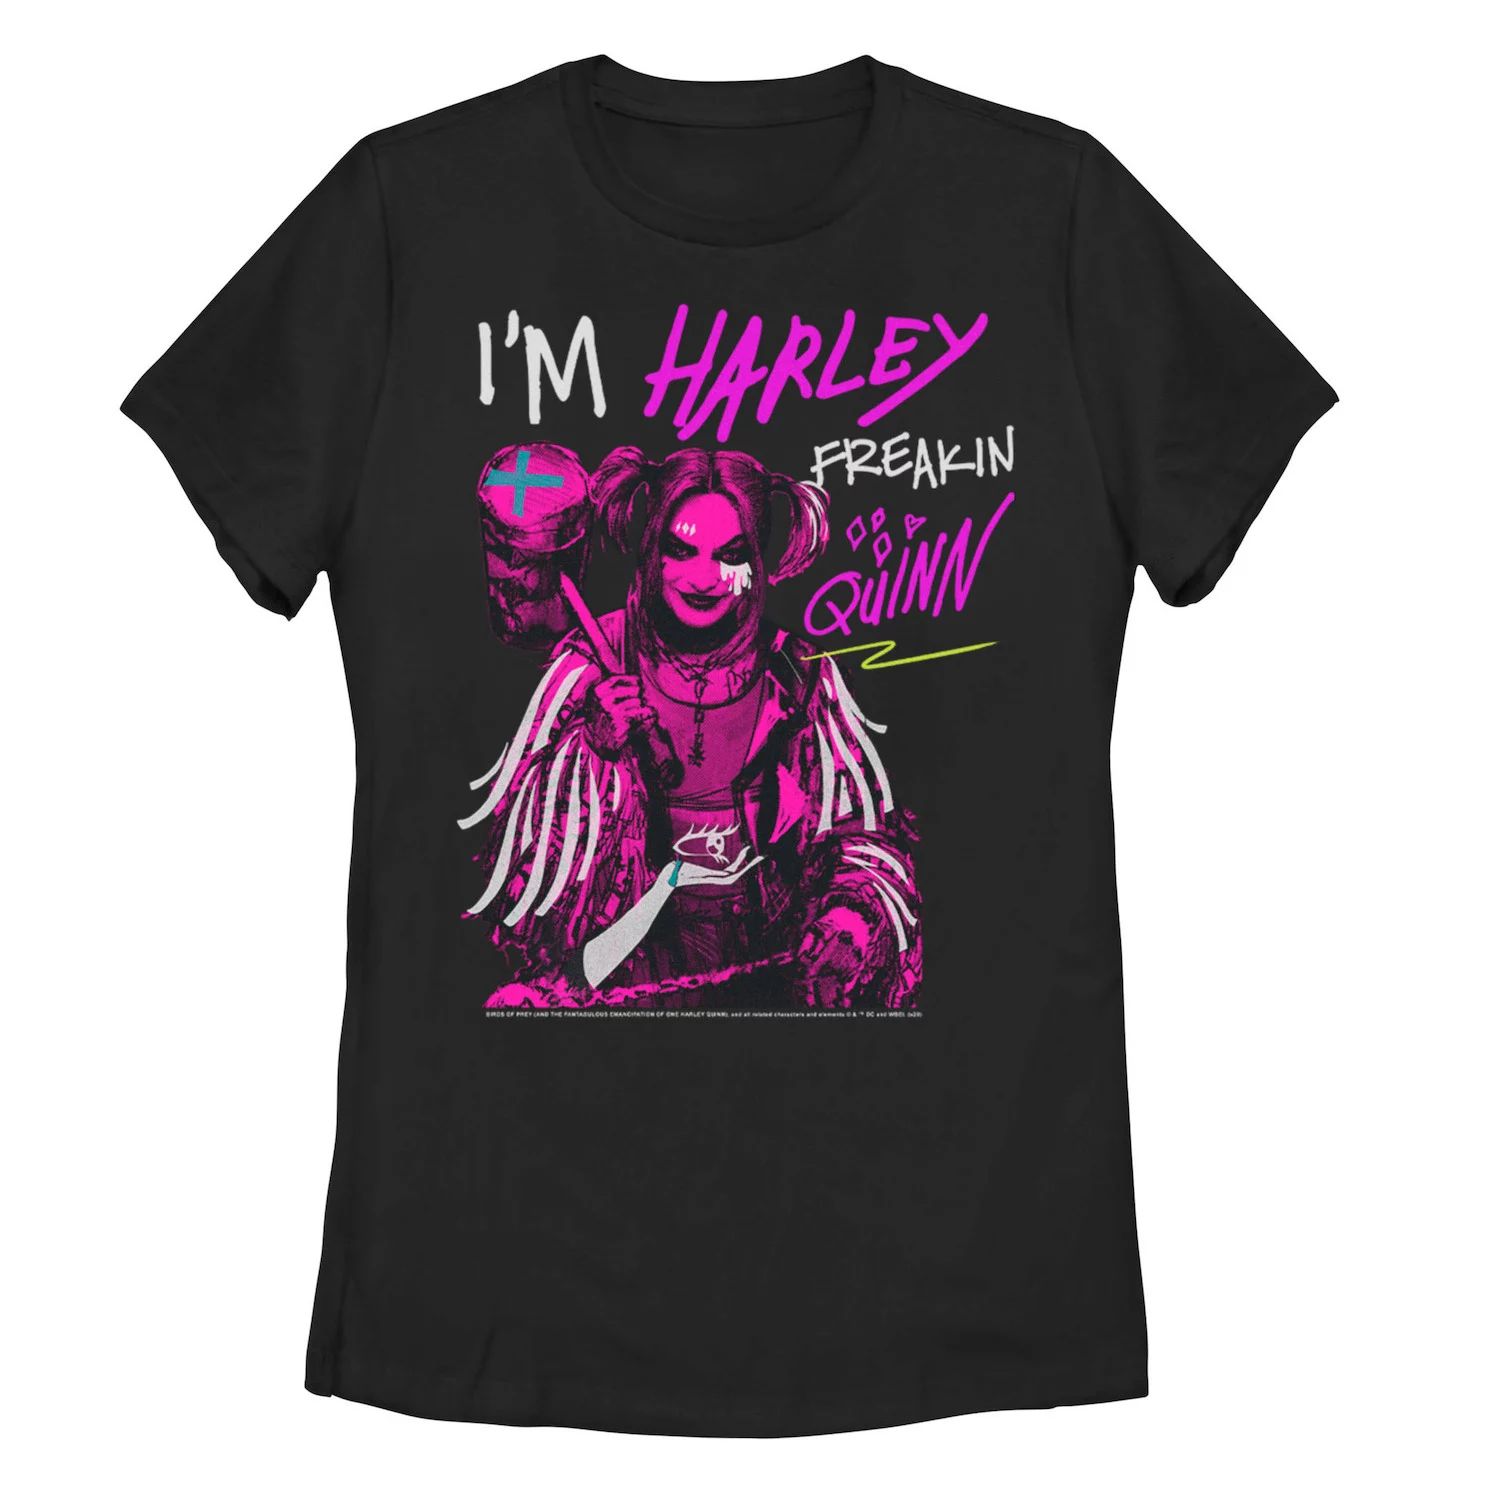 Футболка Harley Quinn: Birds Of Prey для юниоров с надписью «Я Harley Freakin' Quinn» Licensed Character